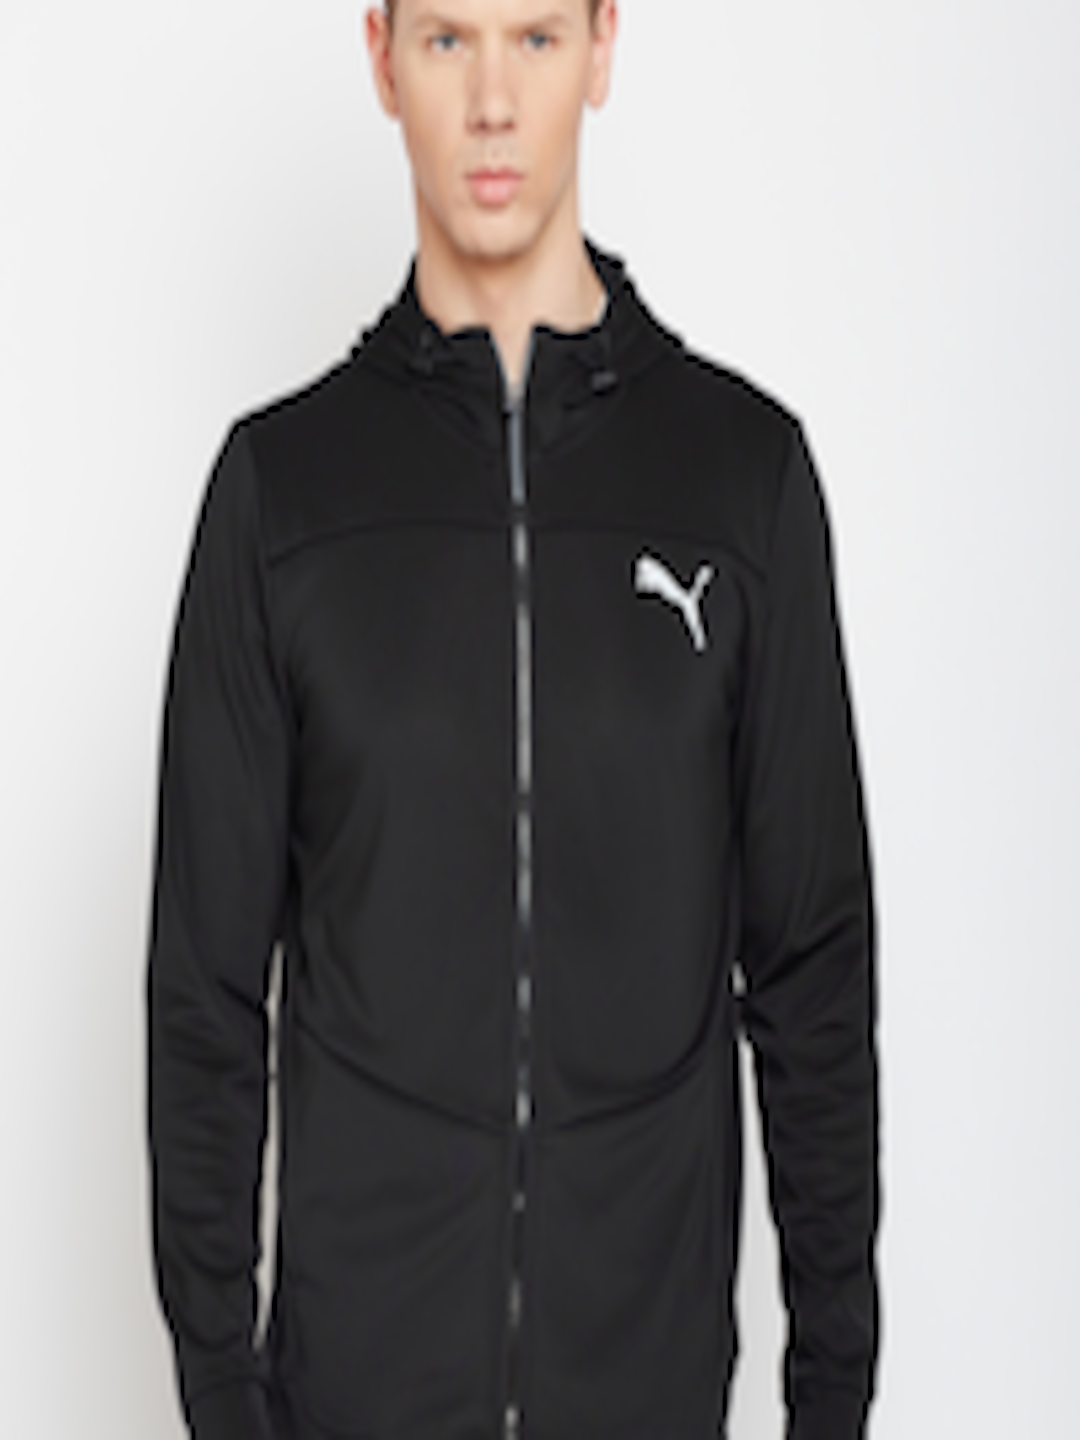 Buy Puma Men Black Solid Sporty Track Jacket - Jackets for Men 2487870 ...